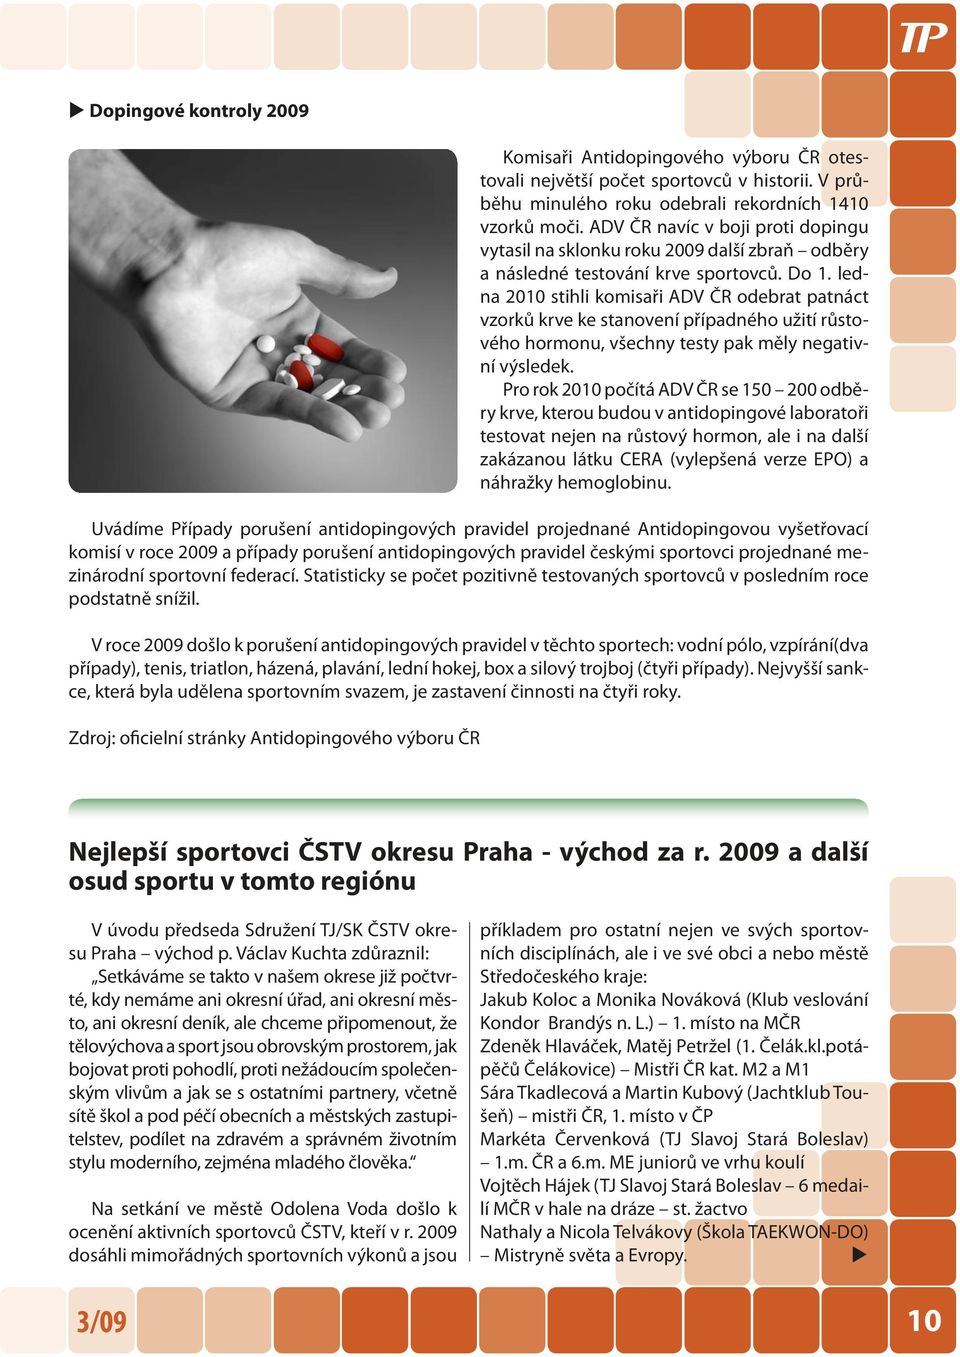 ledna 2010 stihli komisaři ADV ČR odebrat patnáct vzorků krve ke stanovení případného užití růstového hormonu, všechny testy pak měly negativní výsledek.